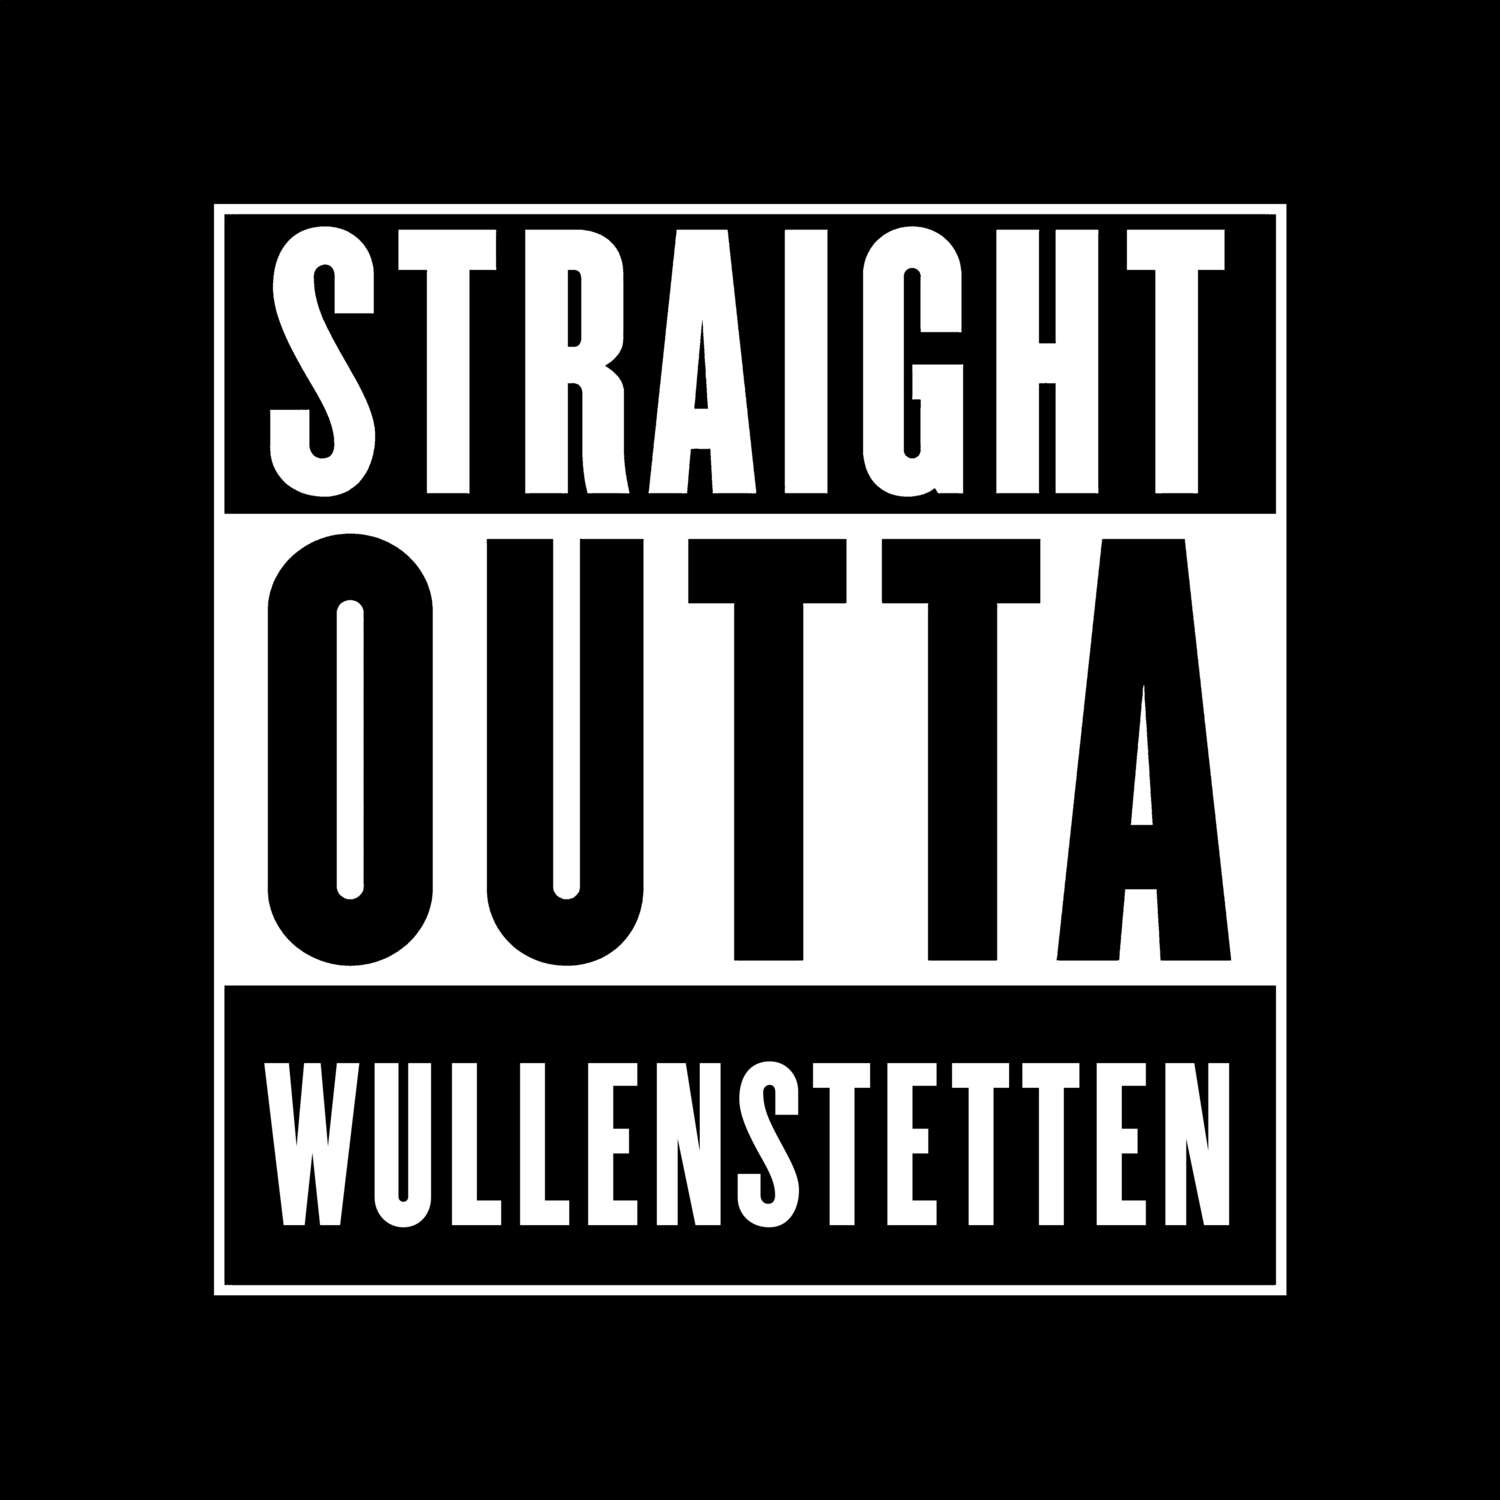 Wullenstetten T-Shirt »Straight Outta«